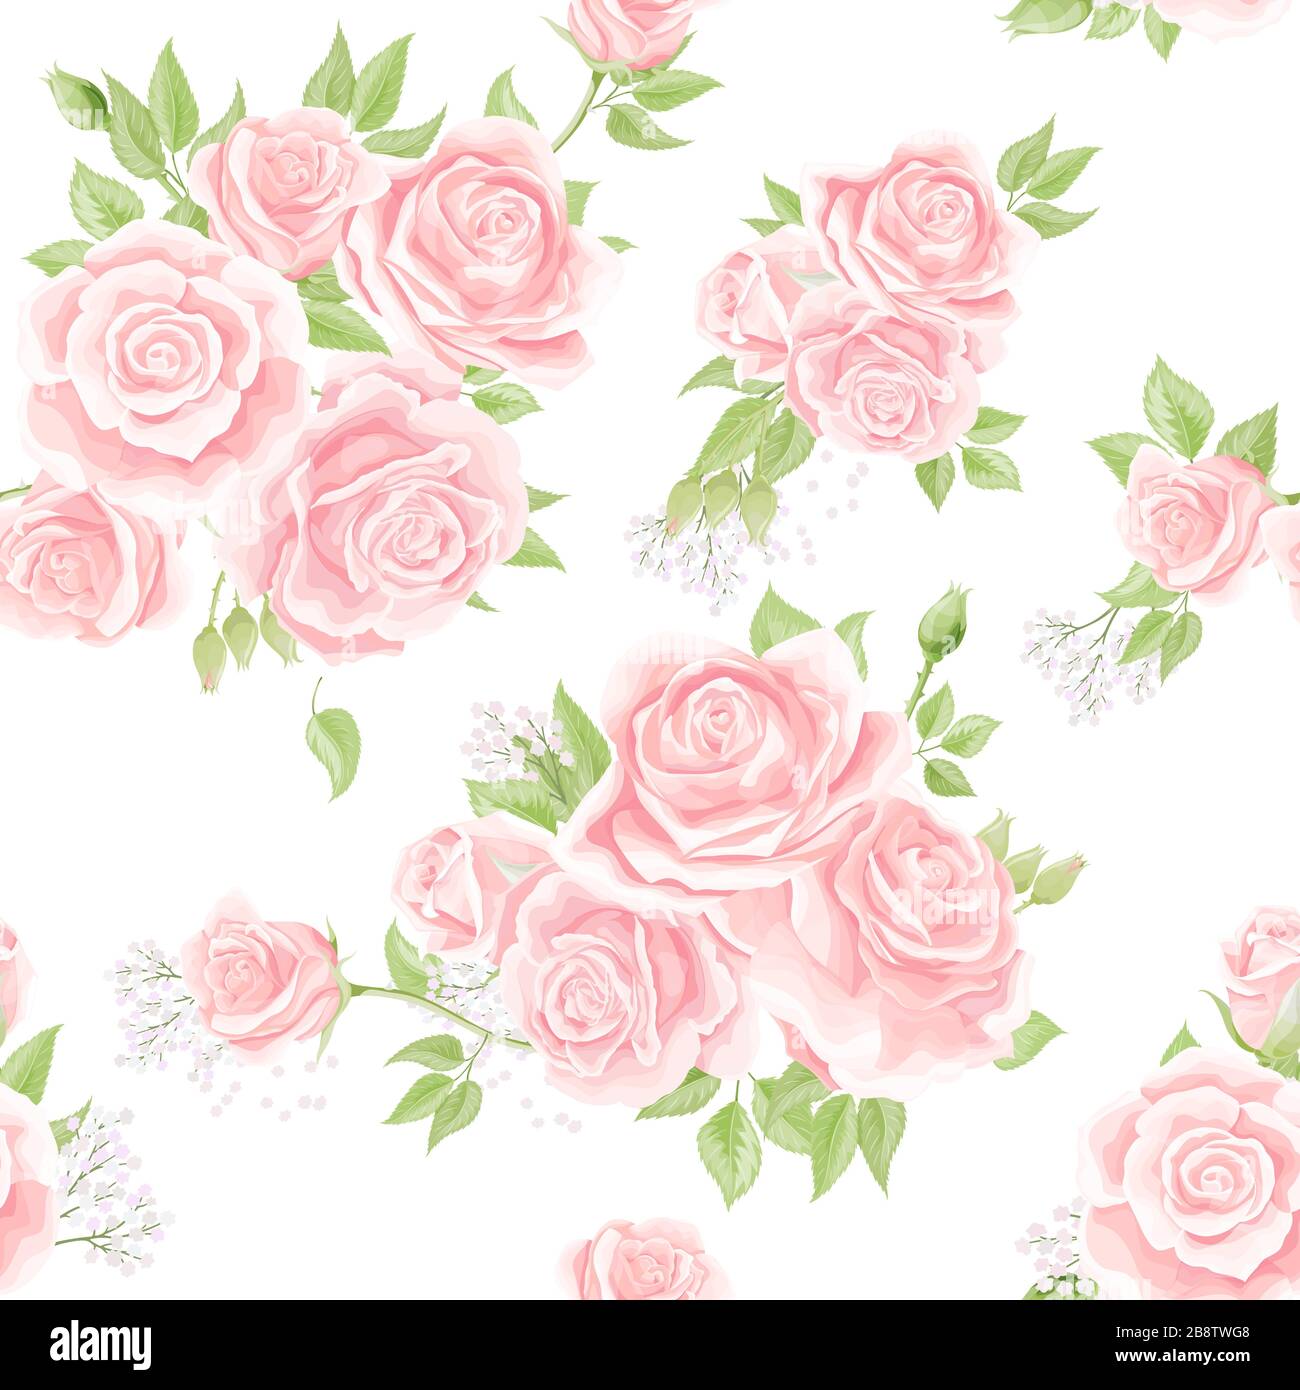 Mẫu hoa hồng vintage màu hồng kem sẽ tạo ra một không gian ấm cúng và dịu dàng. Sự tương phản giữa màu kem pastel và hoa hồng tươi tắn sẽ là điểm nhấn hoàn hảo cho máy tính của bạn.